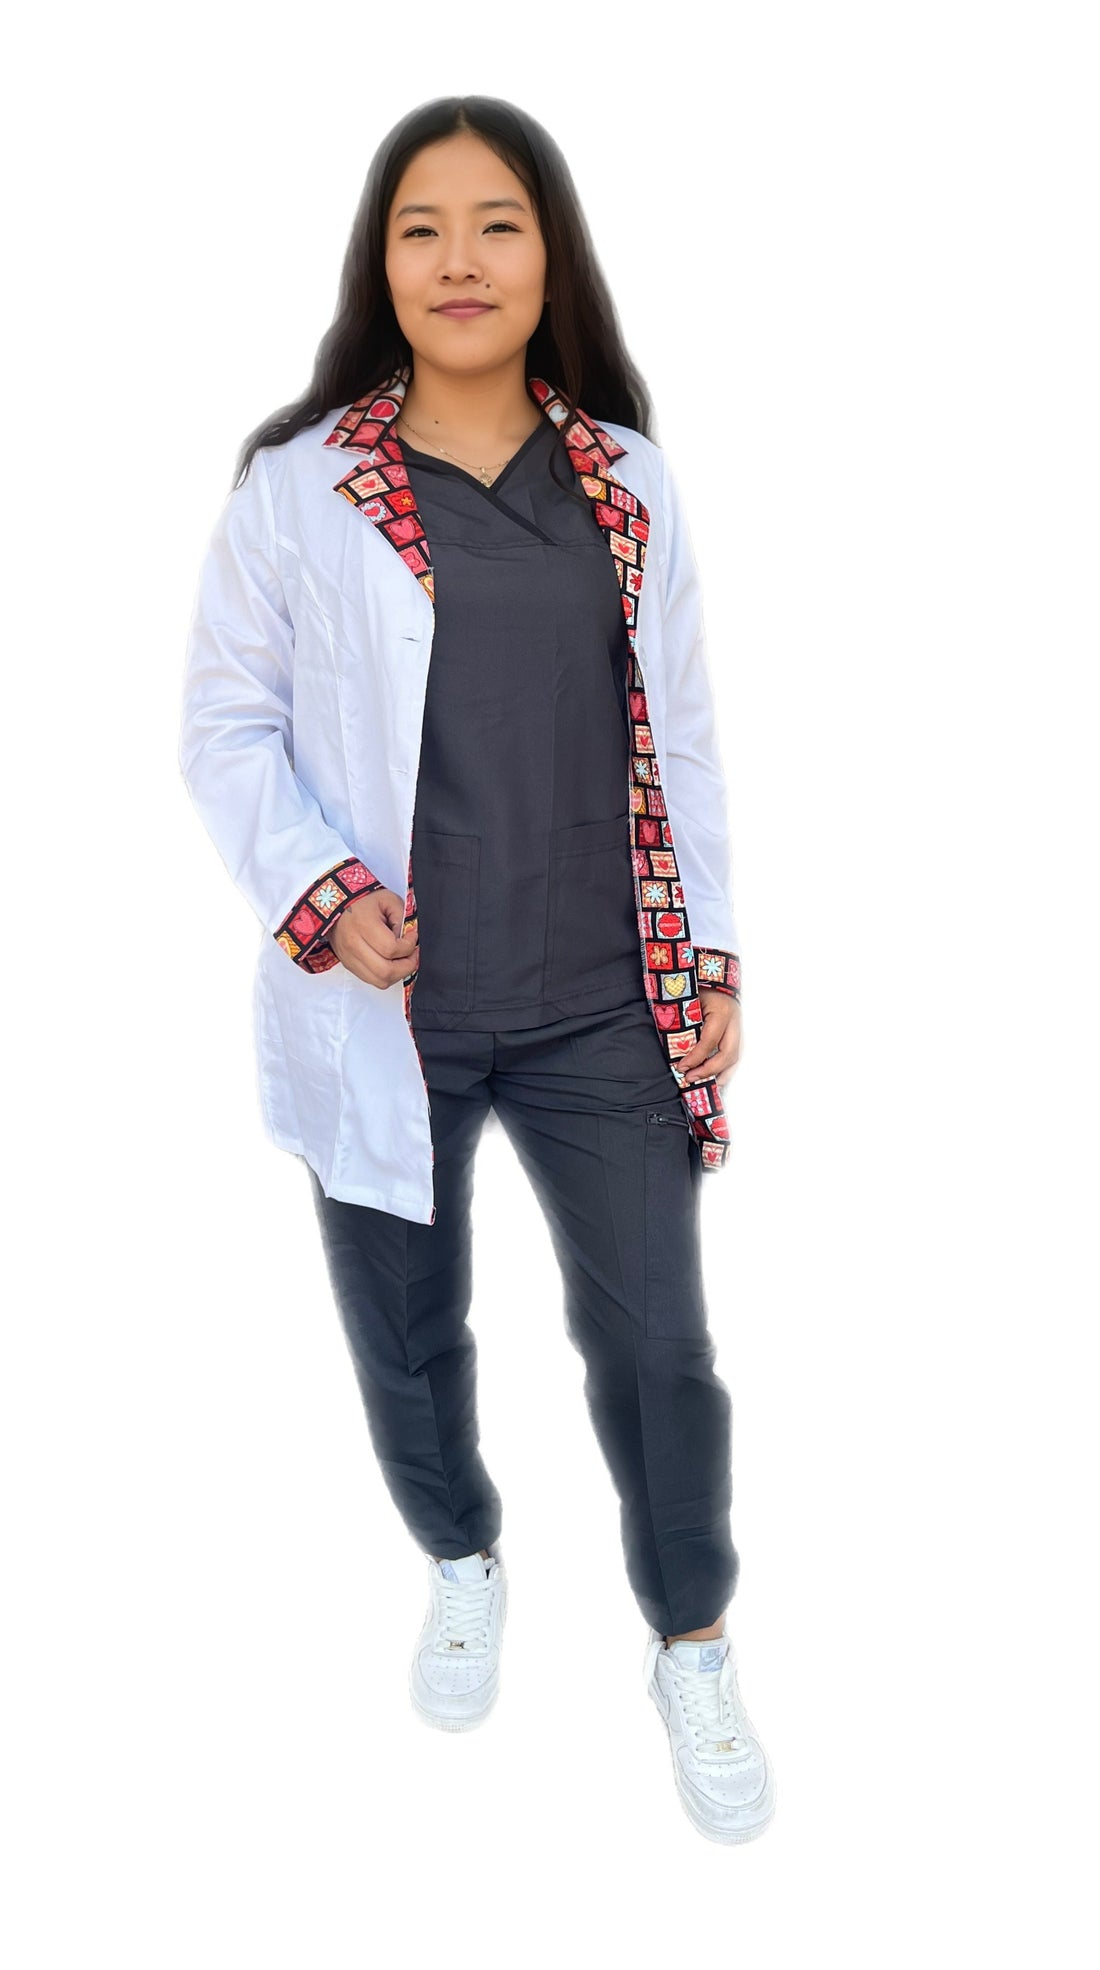 Bata uniformes Stanford medica mujer con estampado